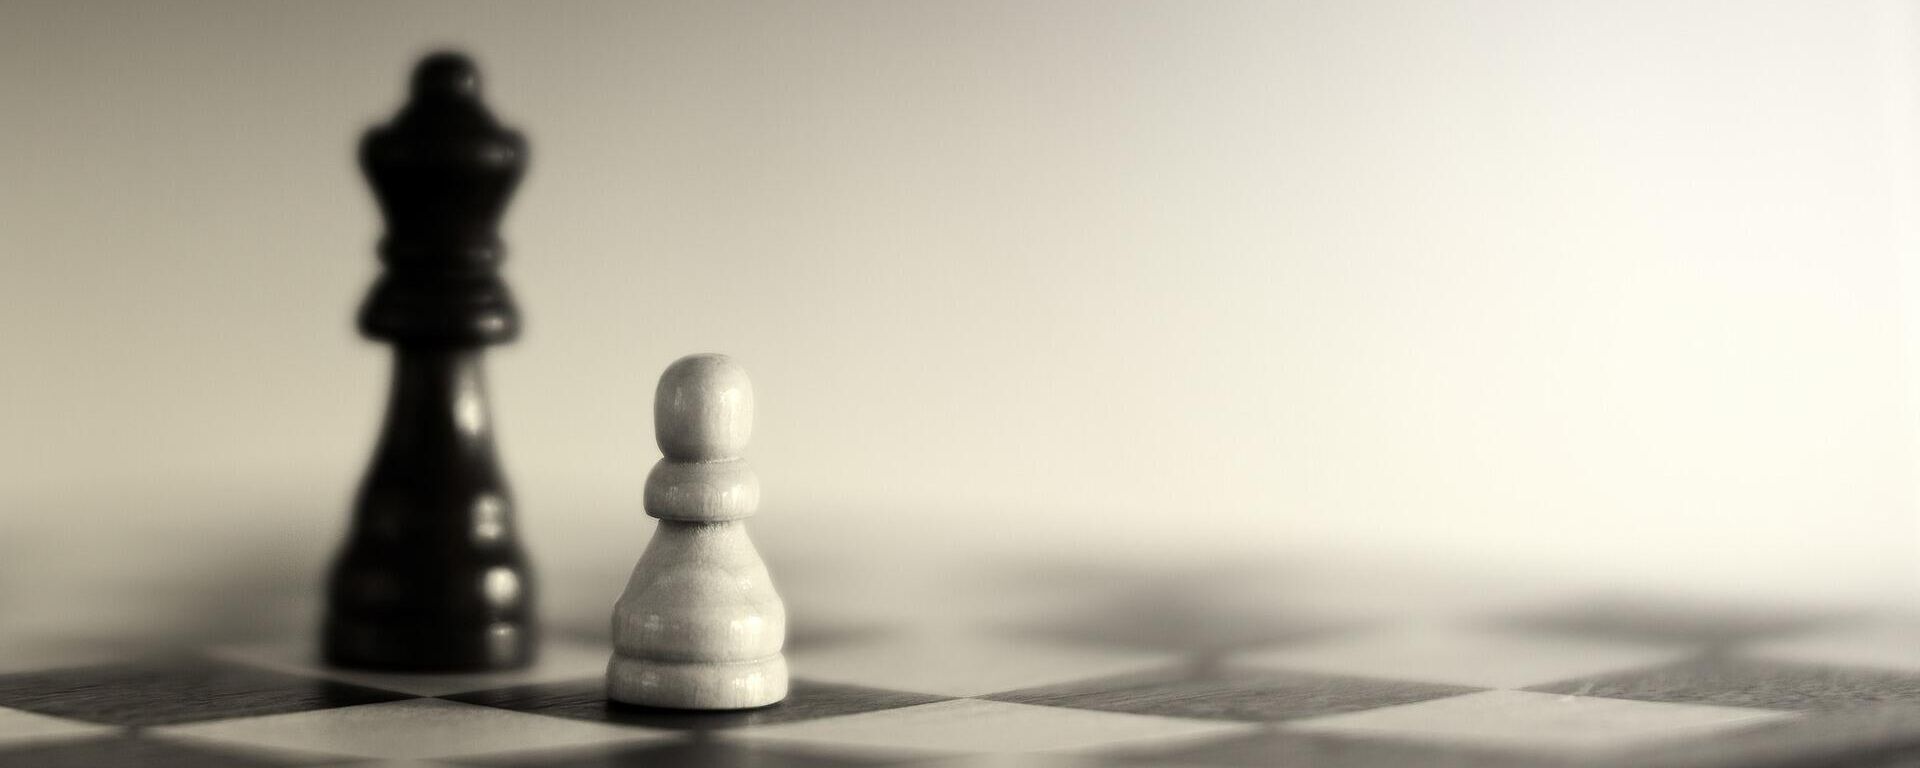 Un peón y una reina en el ajedrez. Imagen referencial - Sputnik Mundo, 1920, 24.03.2021